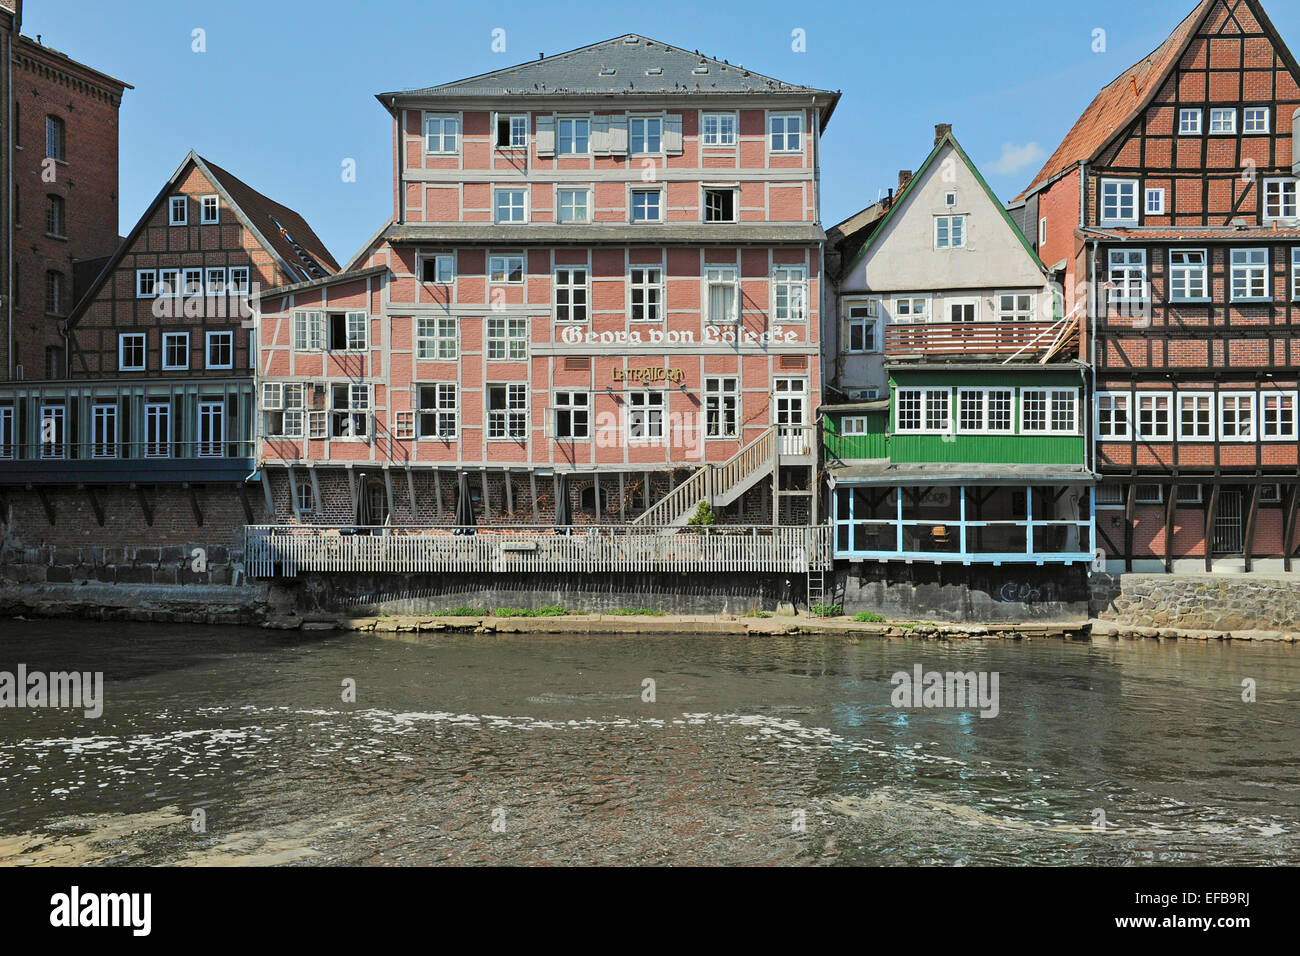 Altstadt von Lüneburg mit Fluss Ilmenau, 21. April 2013 Stockfoto